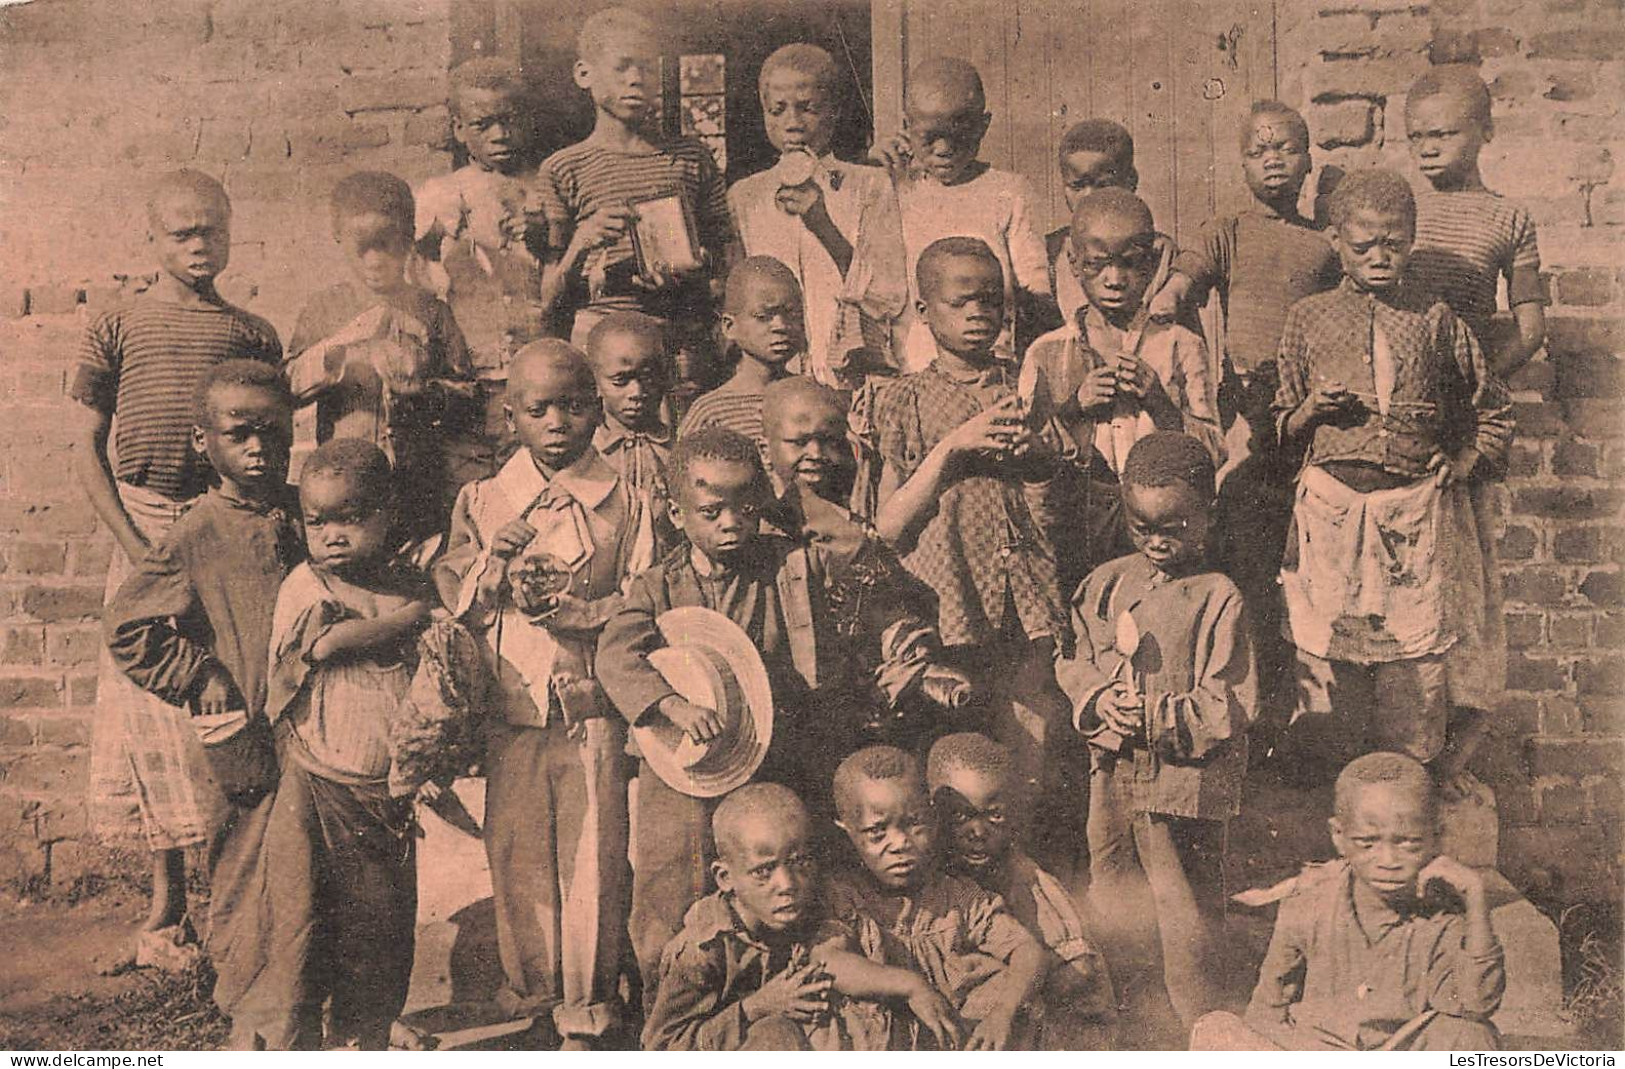 CONGO BELGE - Après La Distribution Des Prix - Enfants - Carte Postale Ancienne - Belgisch-Kongo